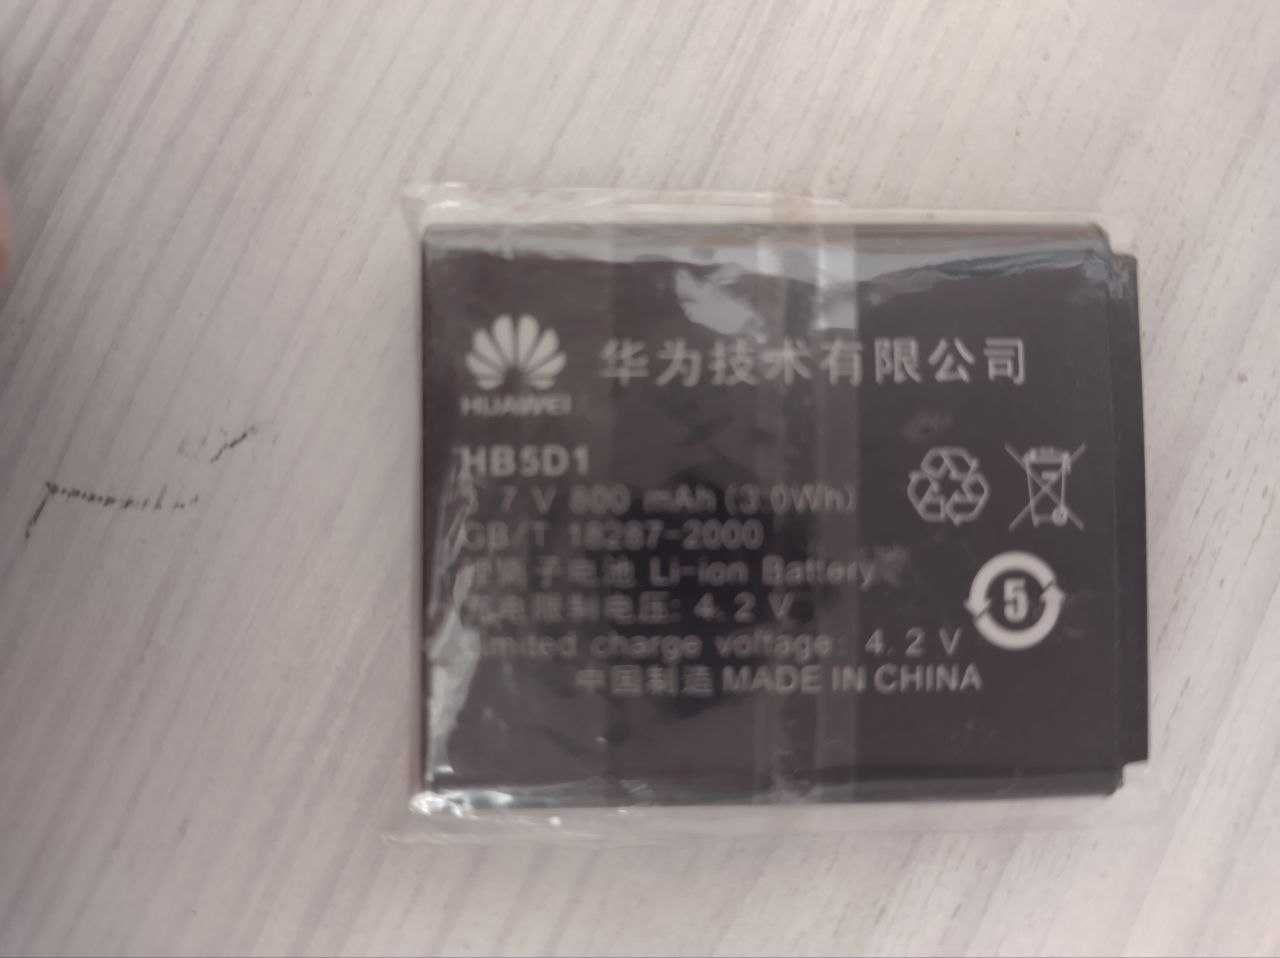 Аккумулятор HB 5 D 1  (новый). Для мобильных телефонов Huawei.